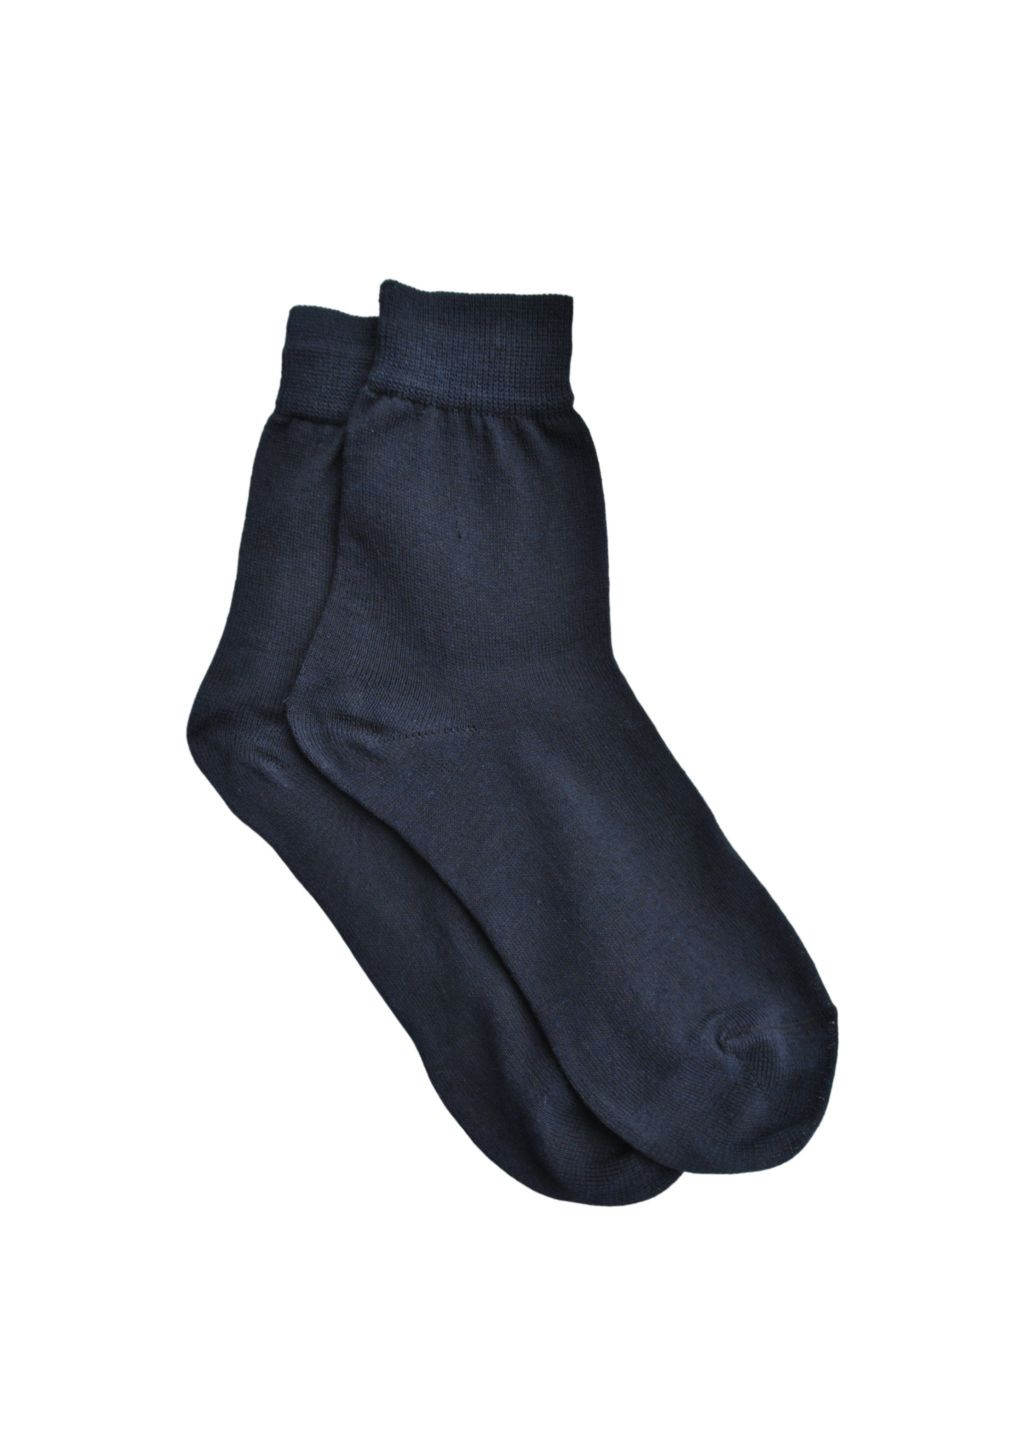 NL () Шкарпетки чол. арт.100/23-25/синій. Набір (3 шт.) MZ 100_набори (260063134)